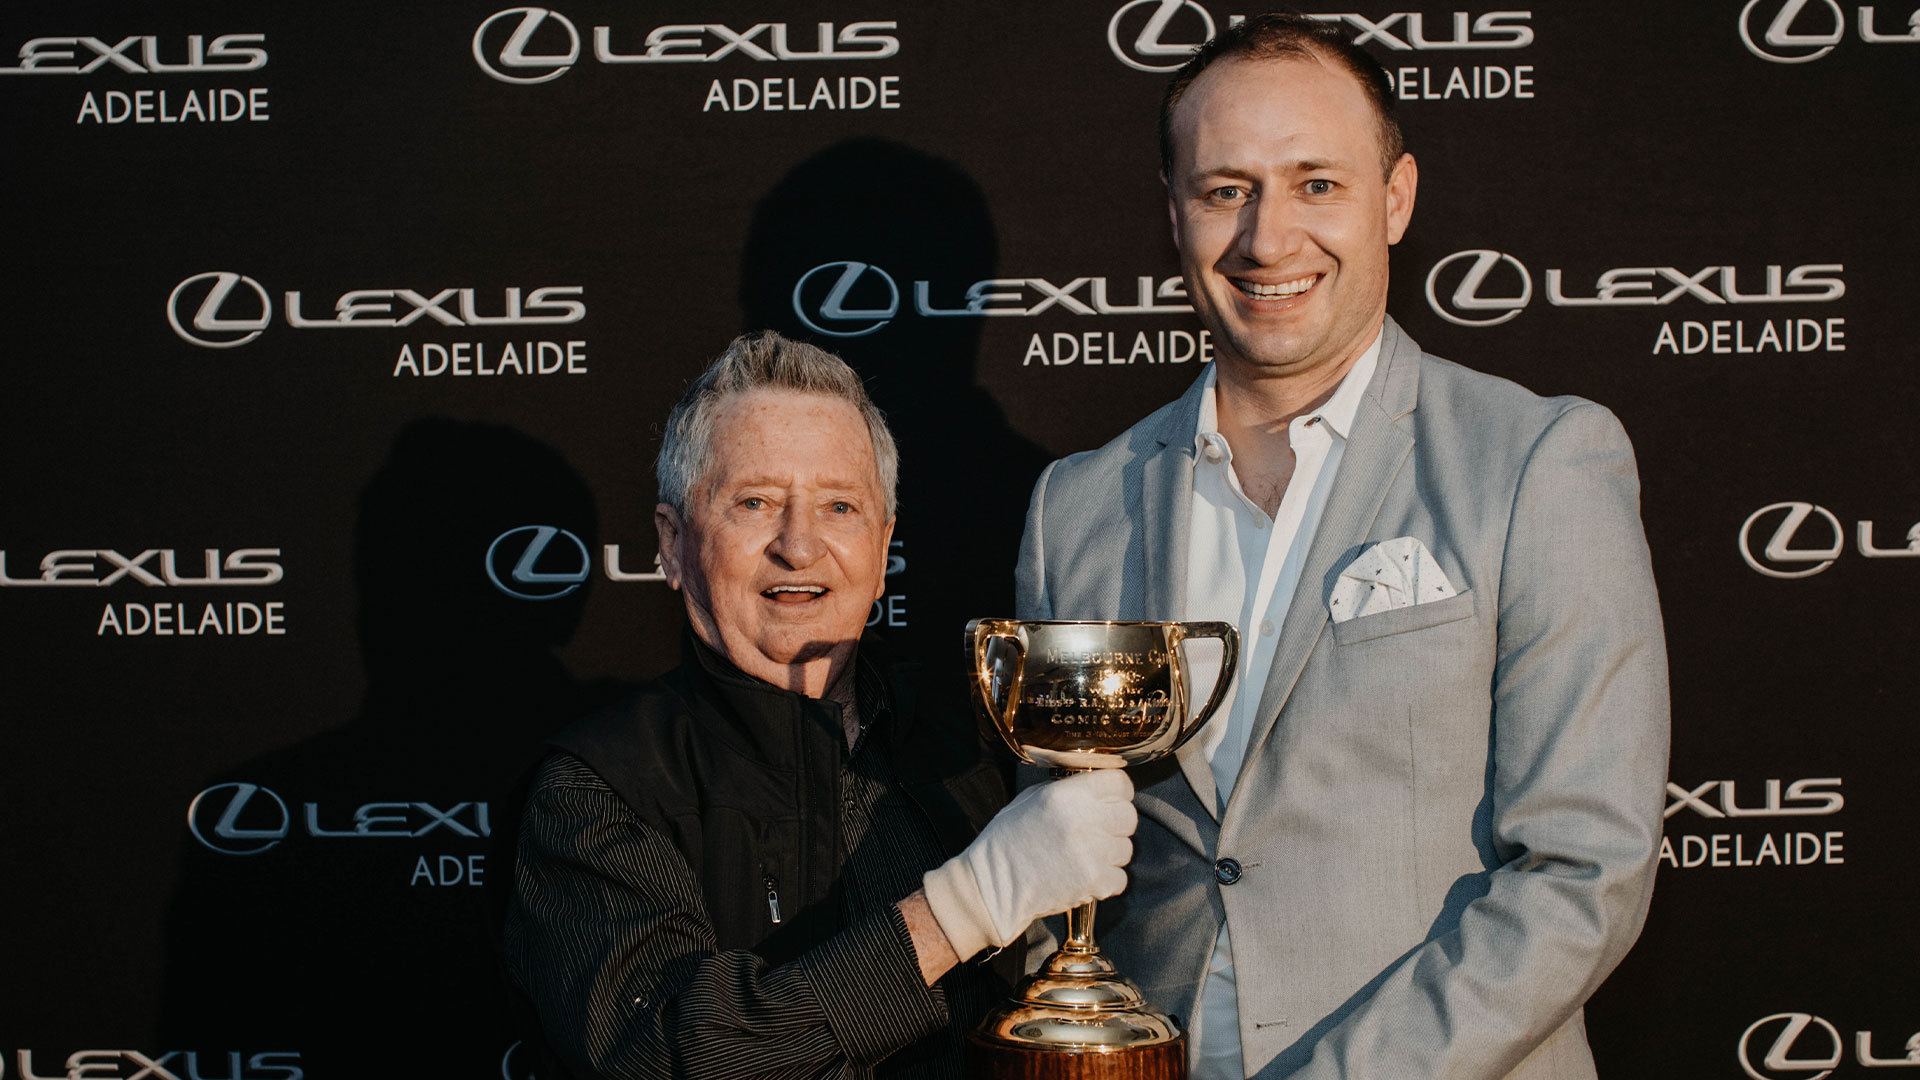 Lexus Melbourne Cup Tour 2021